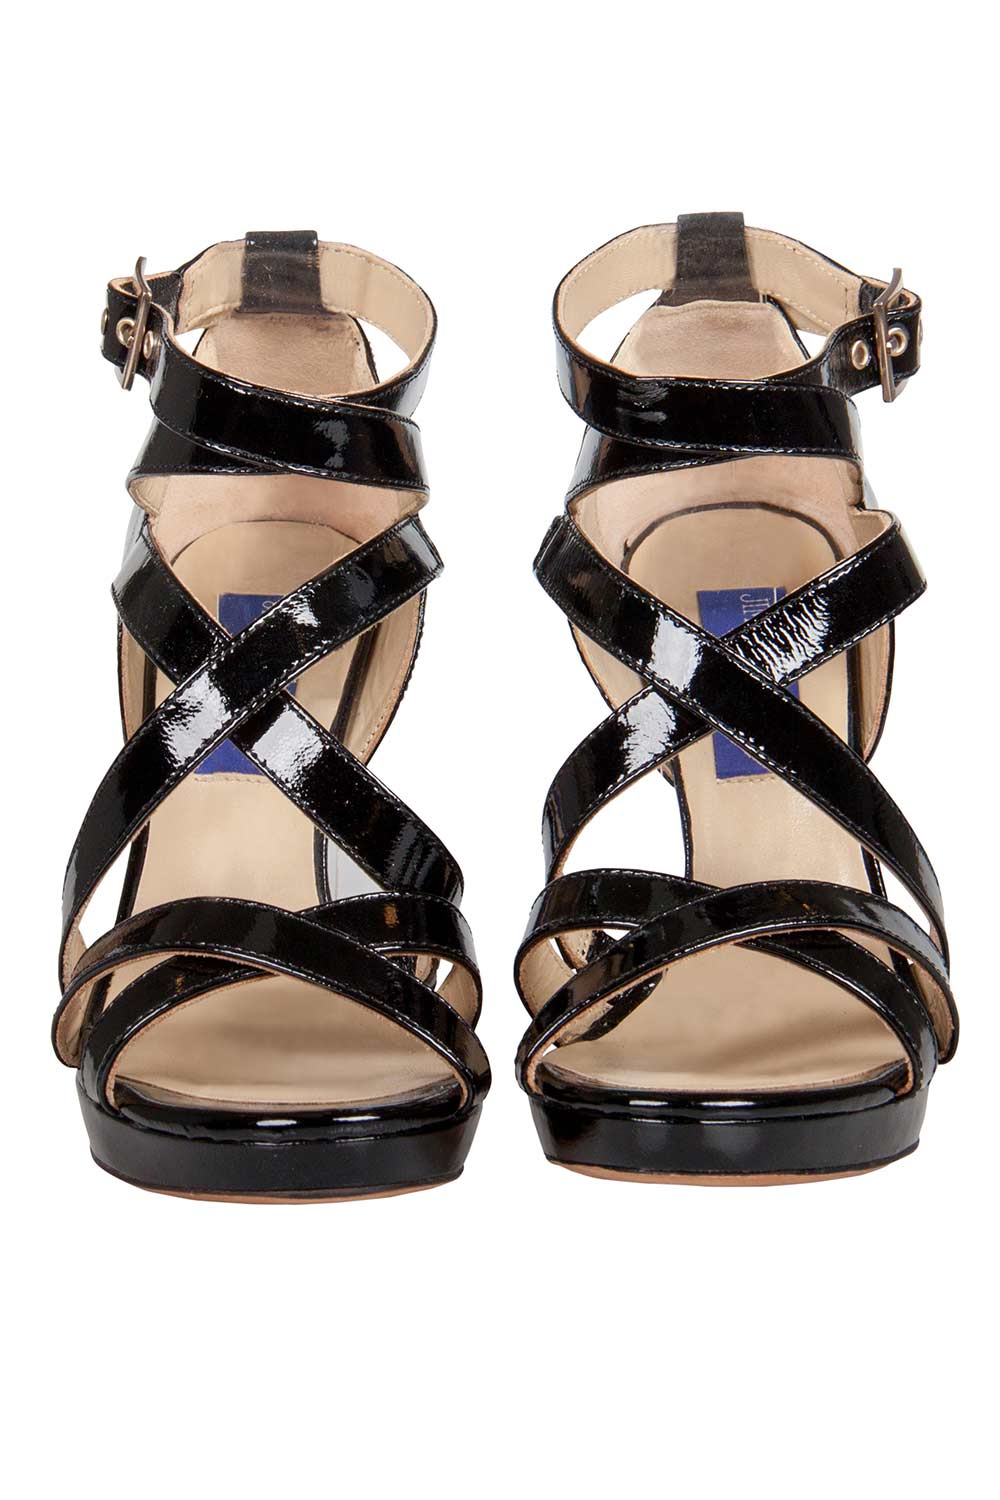 Jimmy Choo Black Patent Leather Poppy Strappy Platform Sandals Size 37